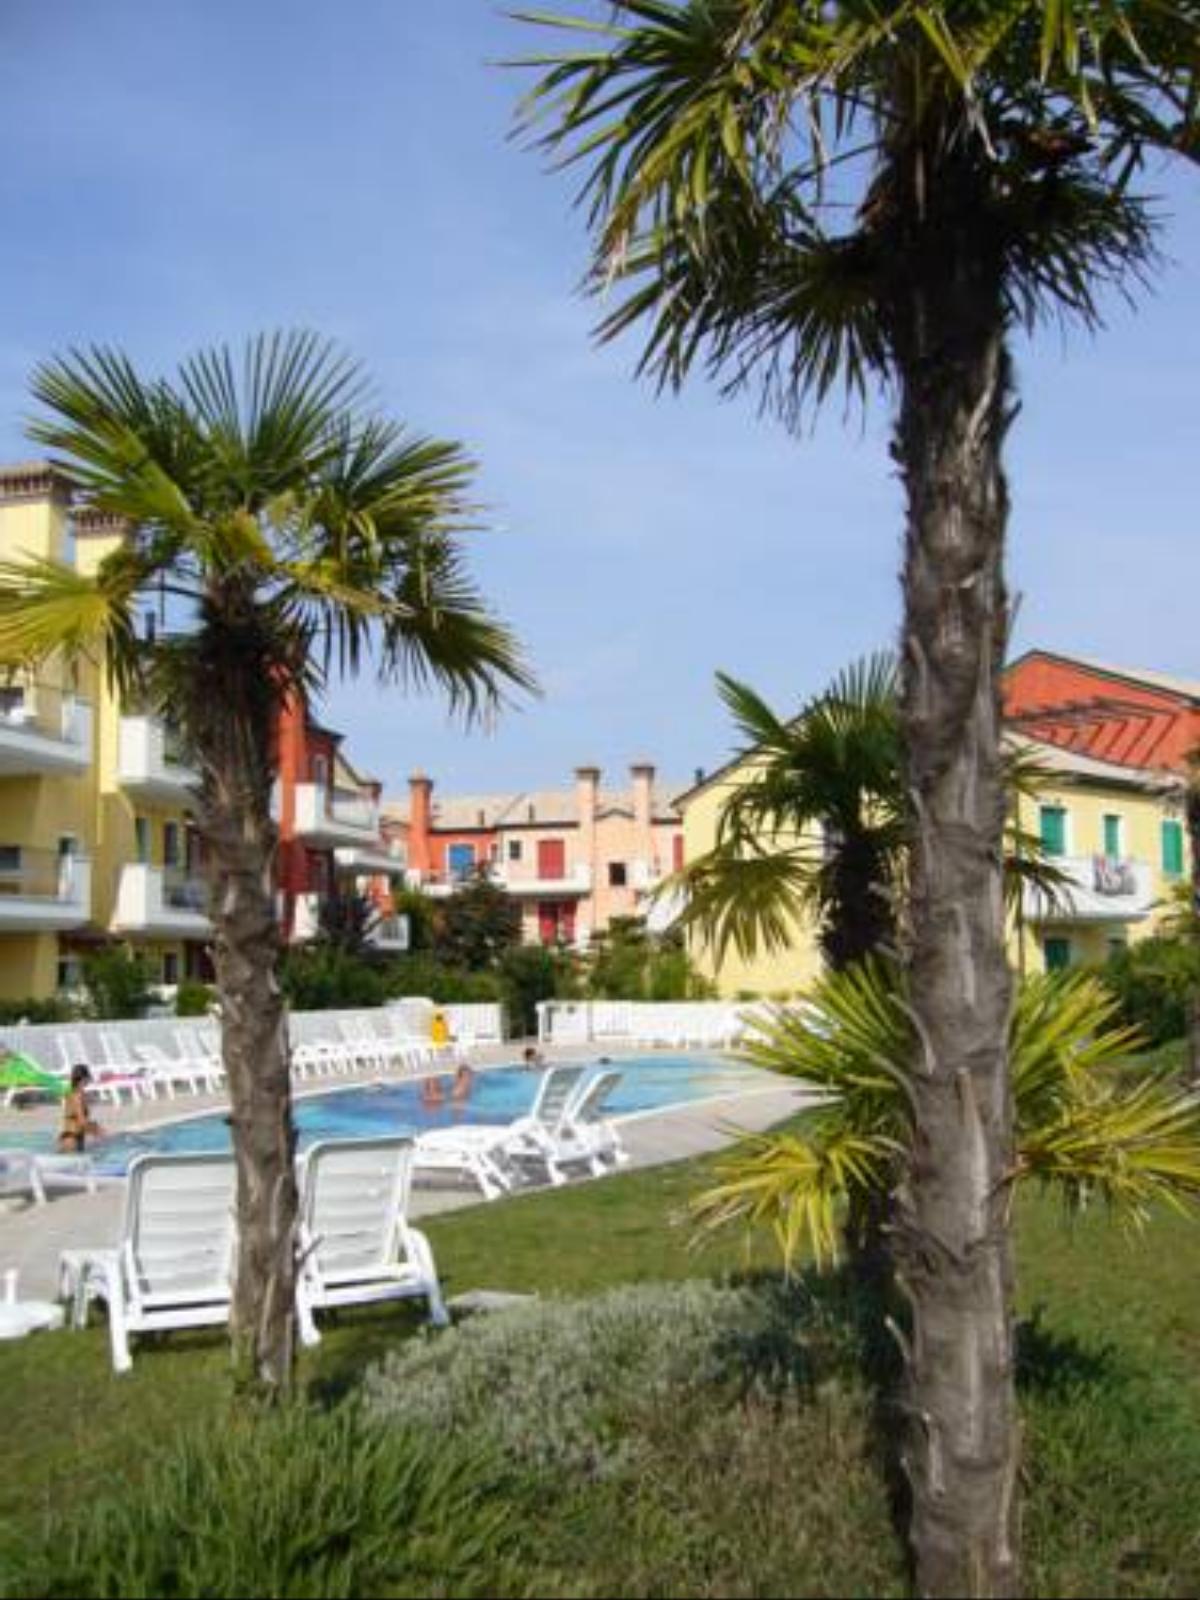 Le Ginestre Hotel Cavallino-Treporti Italy